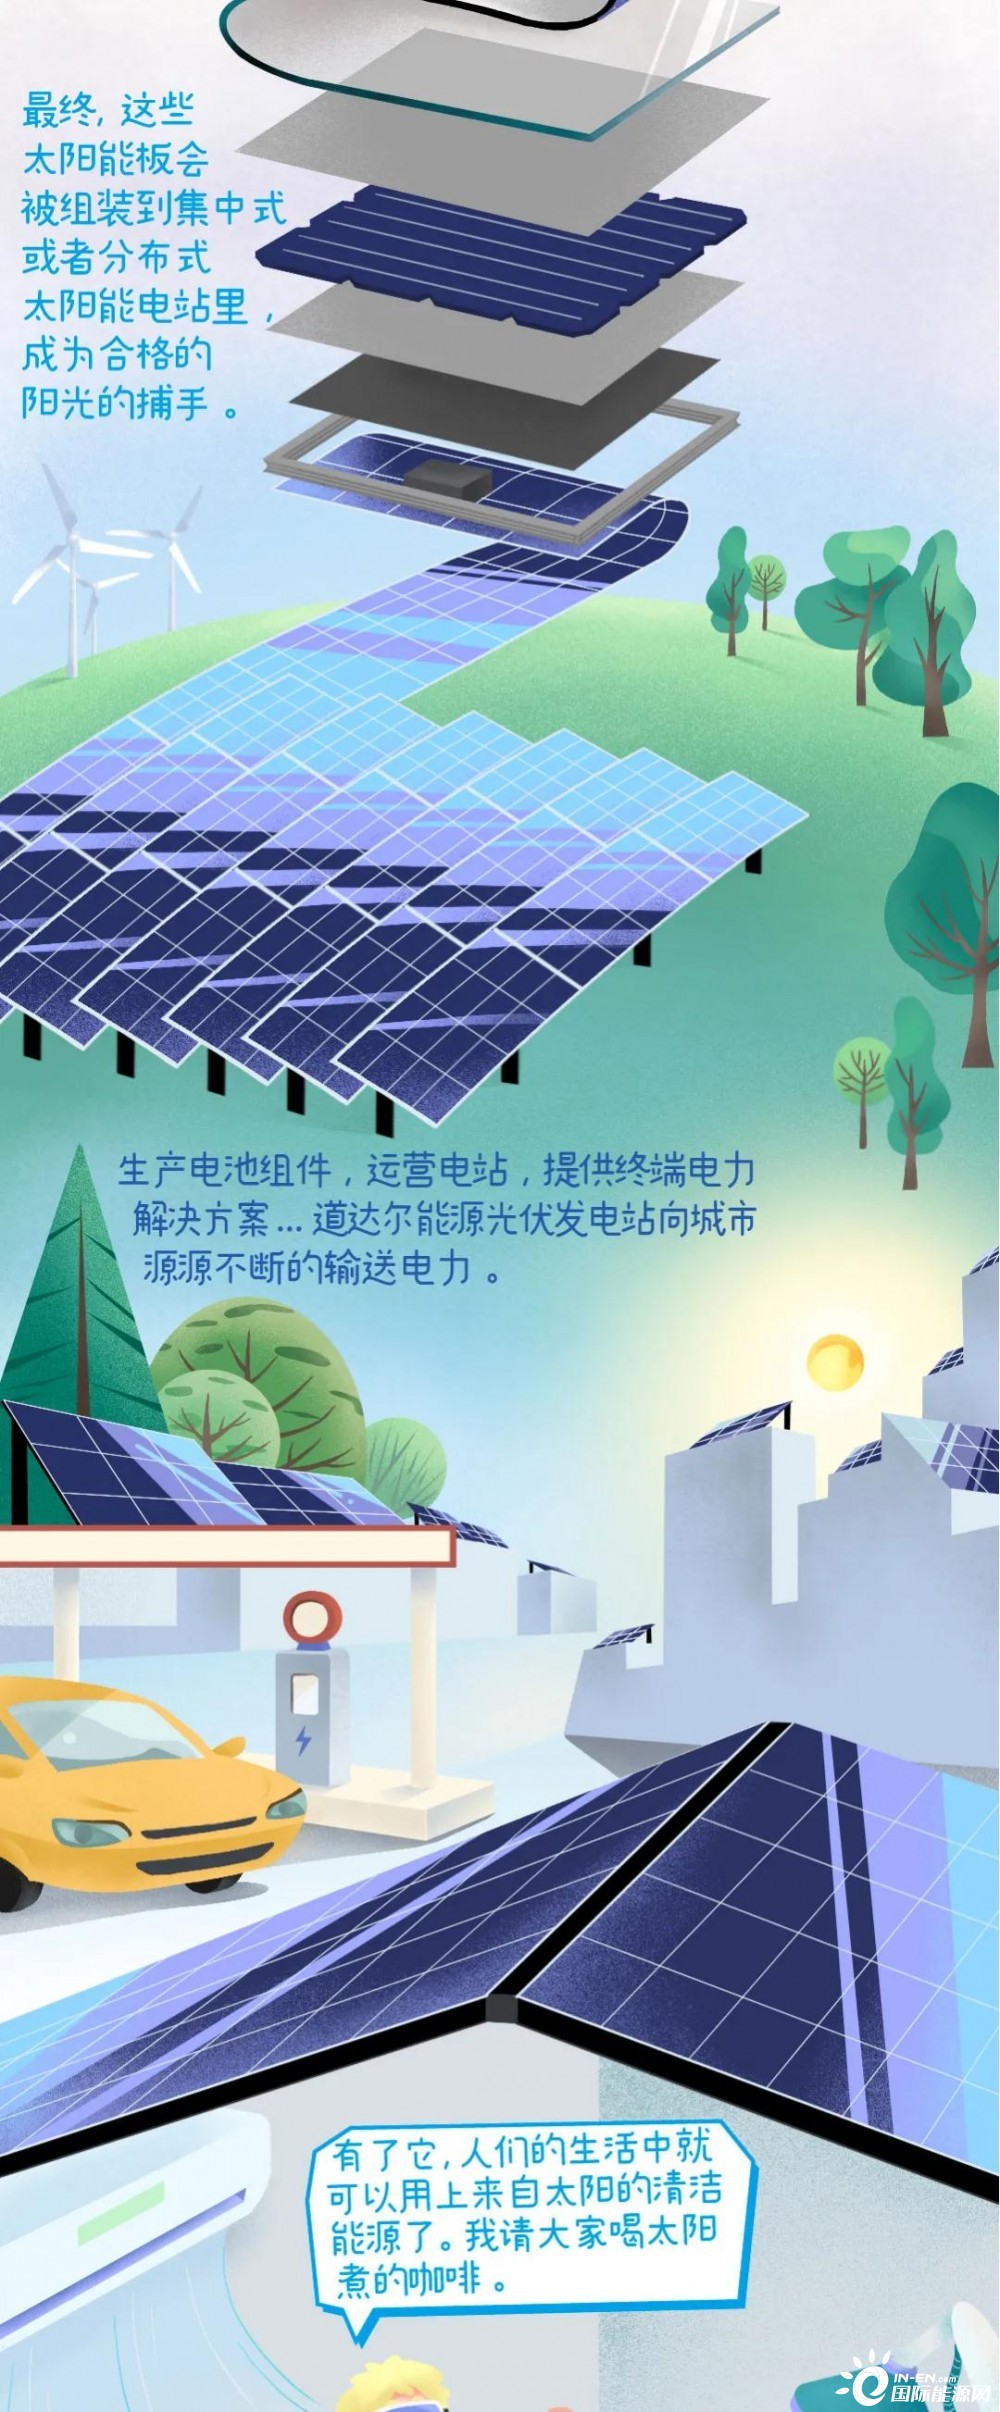 太阳能板是如何发电的？看完这幅漫画你就懂了!